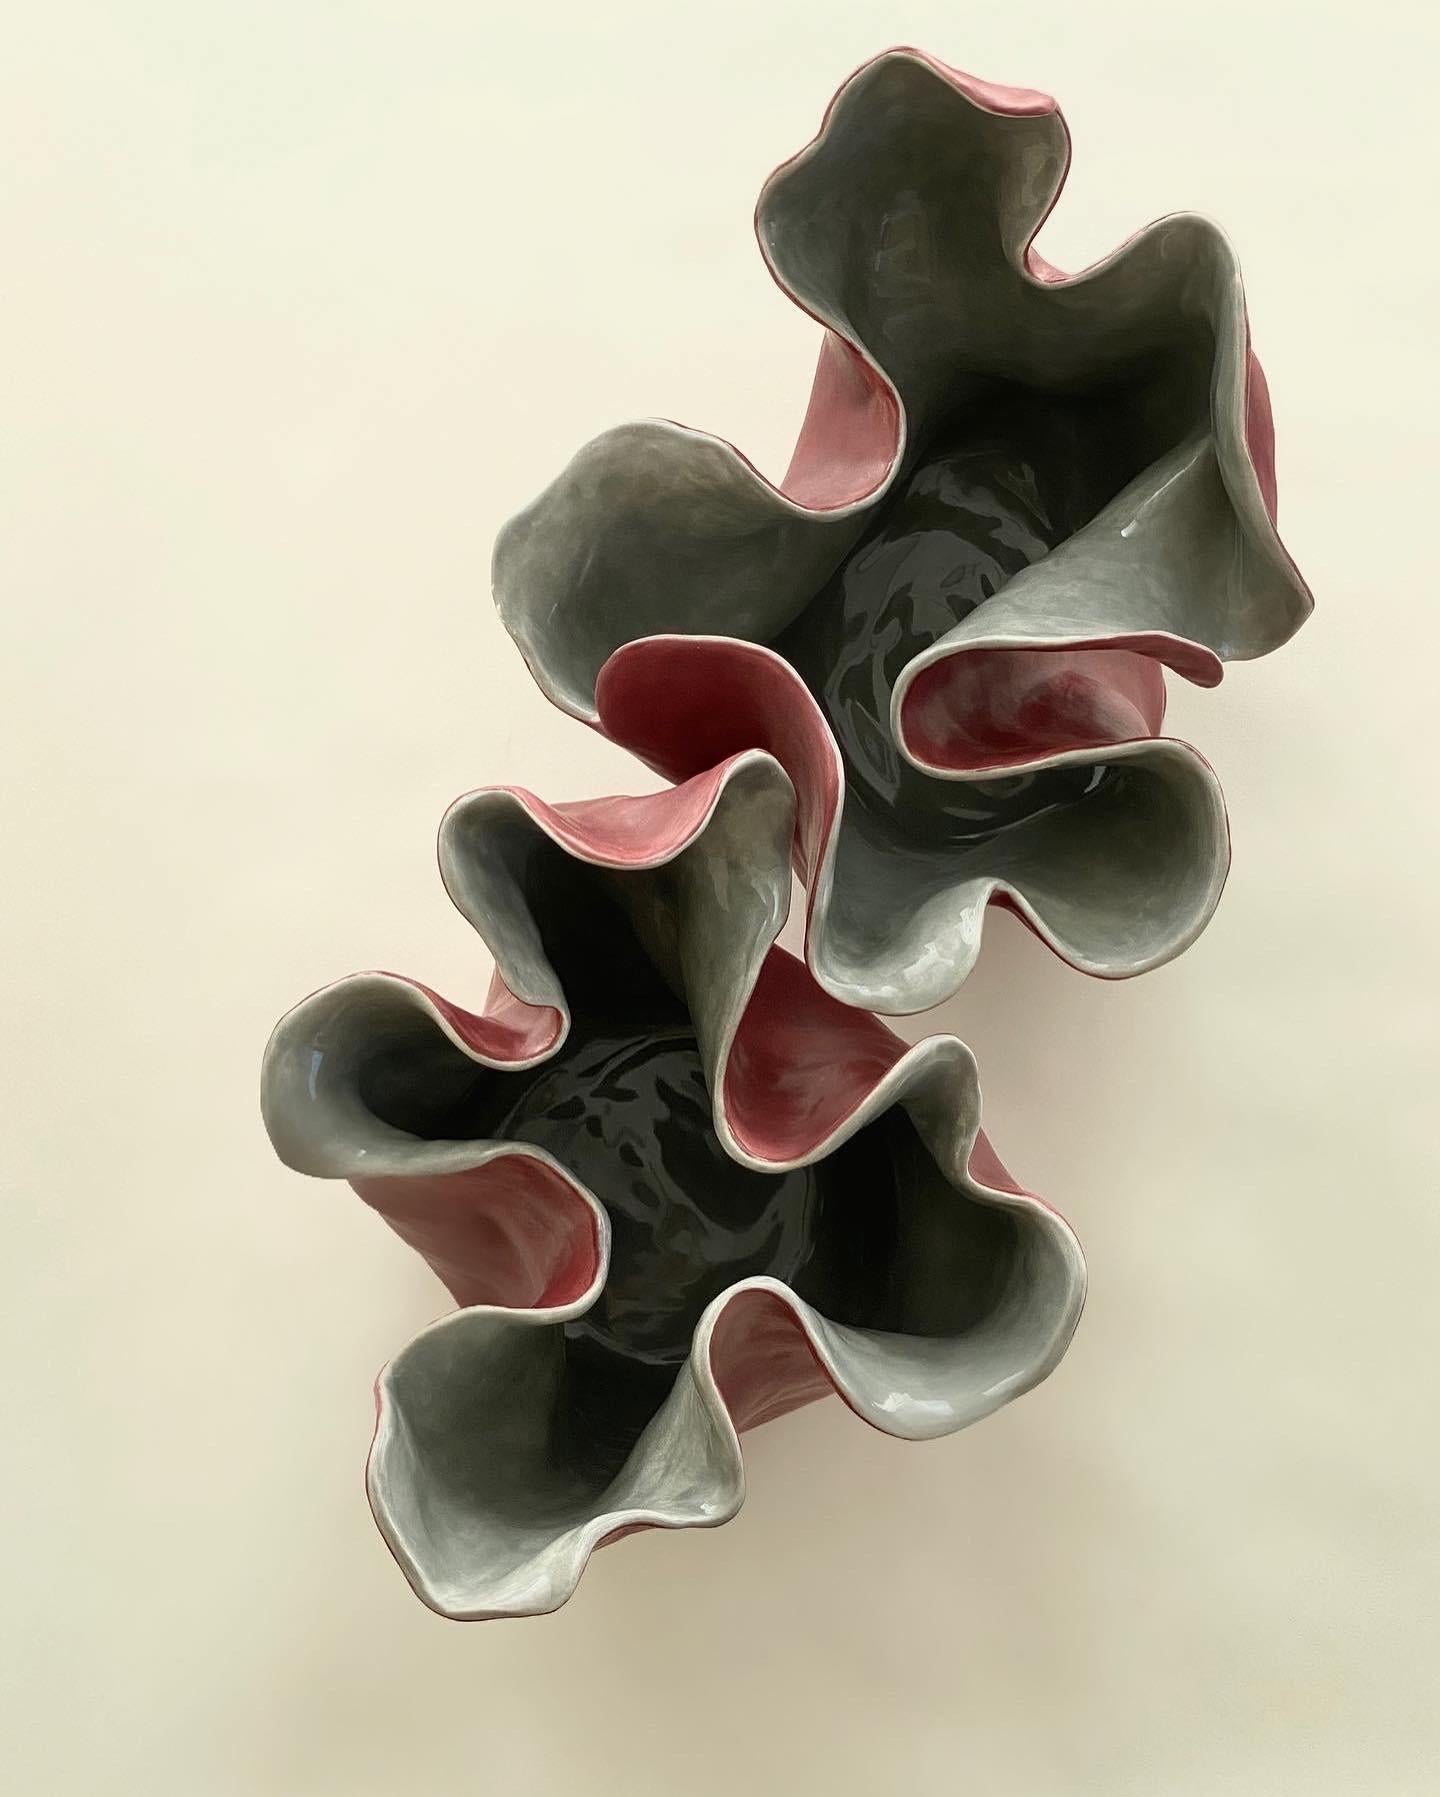 Visceral I, Rouge et gris, 2020 par Magda von Hanau
De la série Visceral
Sculpture en argile avec glaçure en verre
Dimensions : 12 H x 33 DM in. 

La série Visceral se penche sur la relation complexe entre l'esprit et le corps, et plus